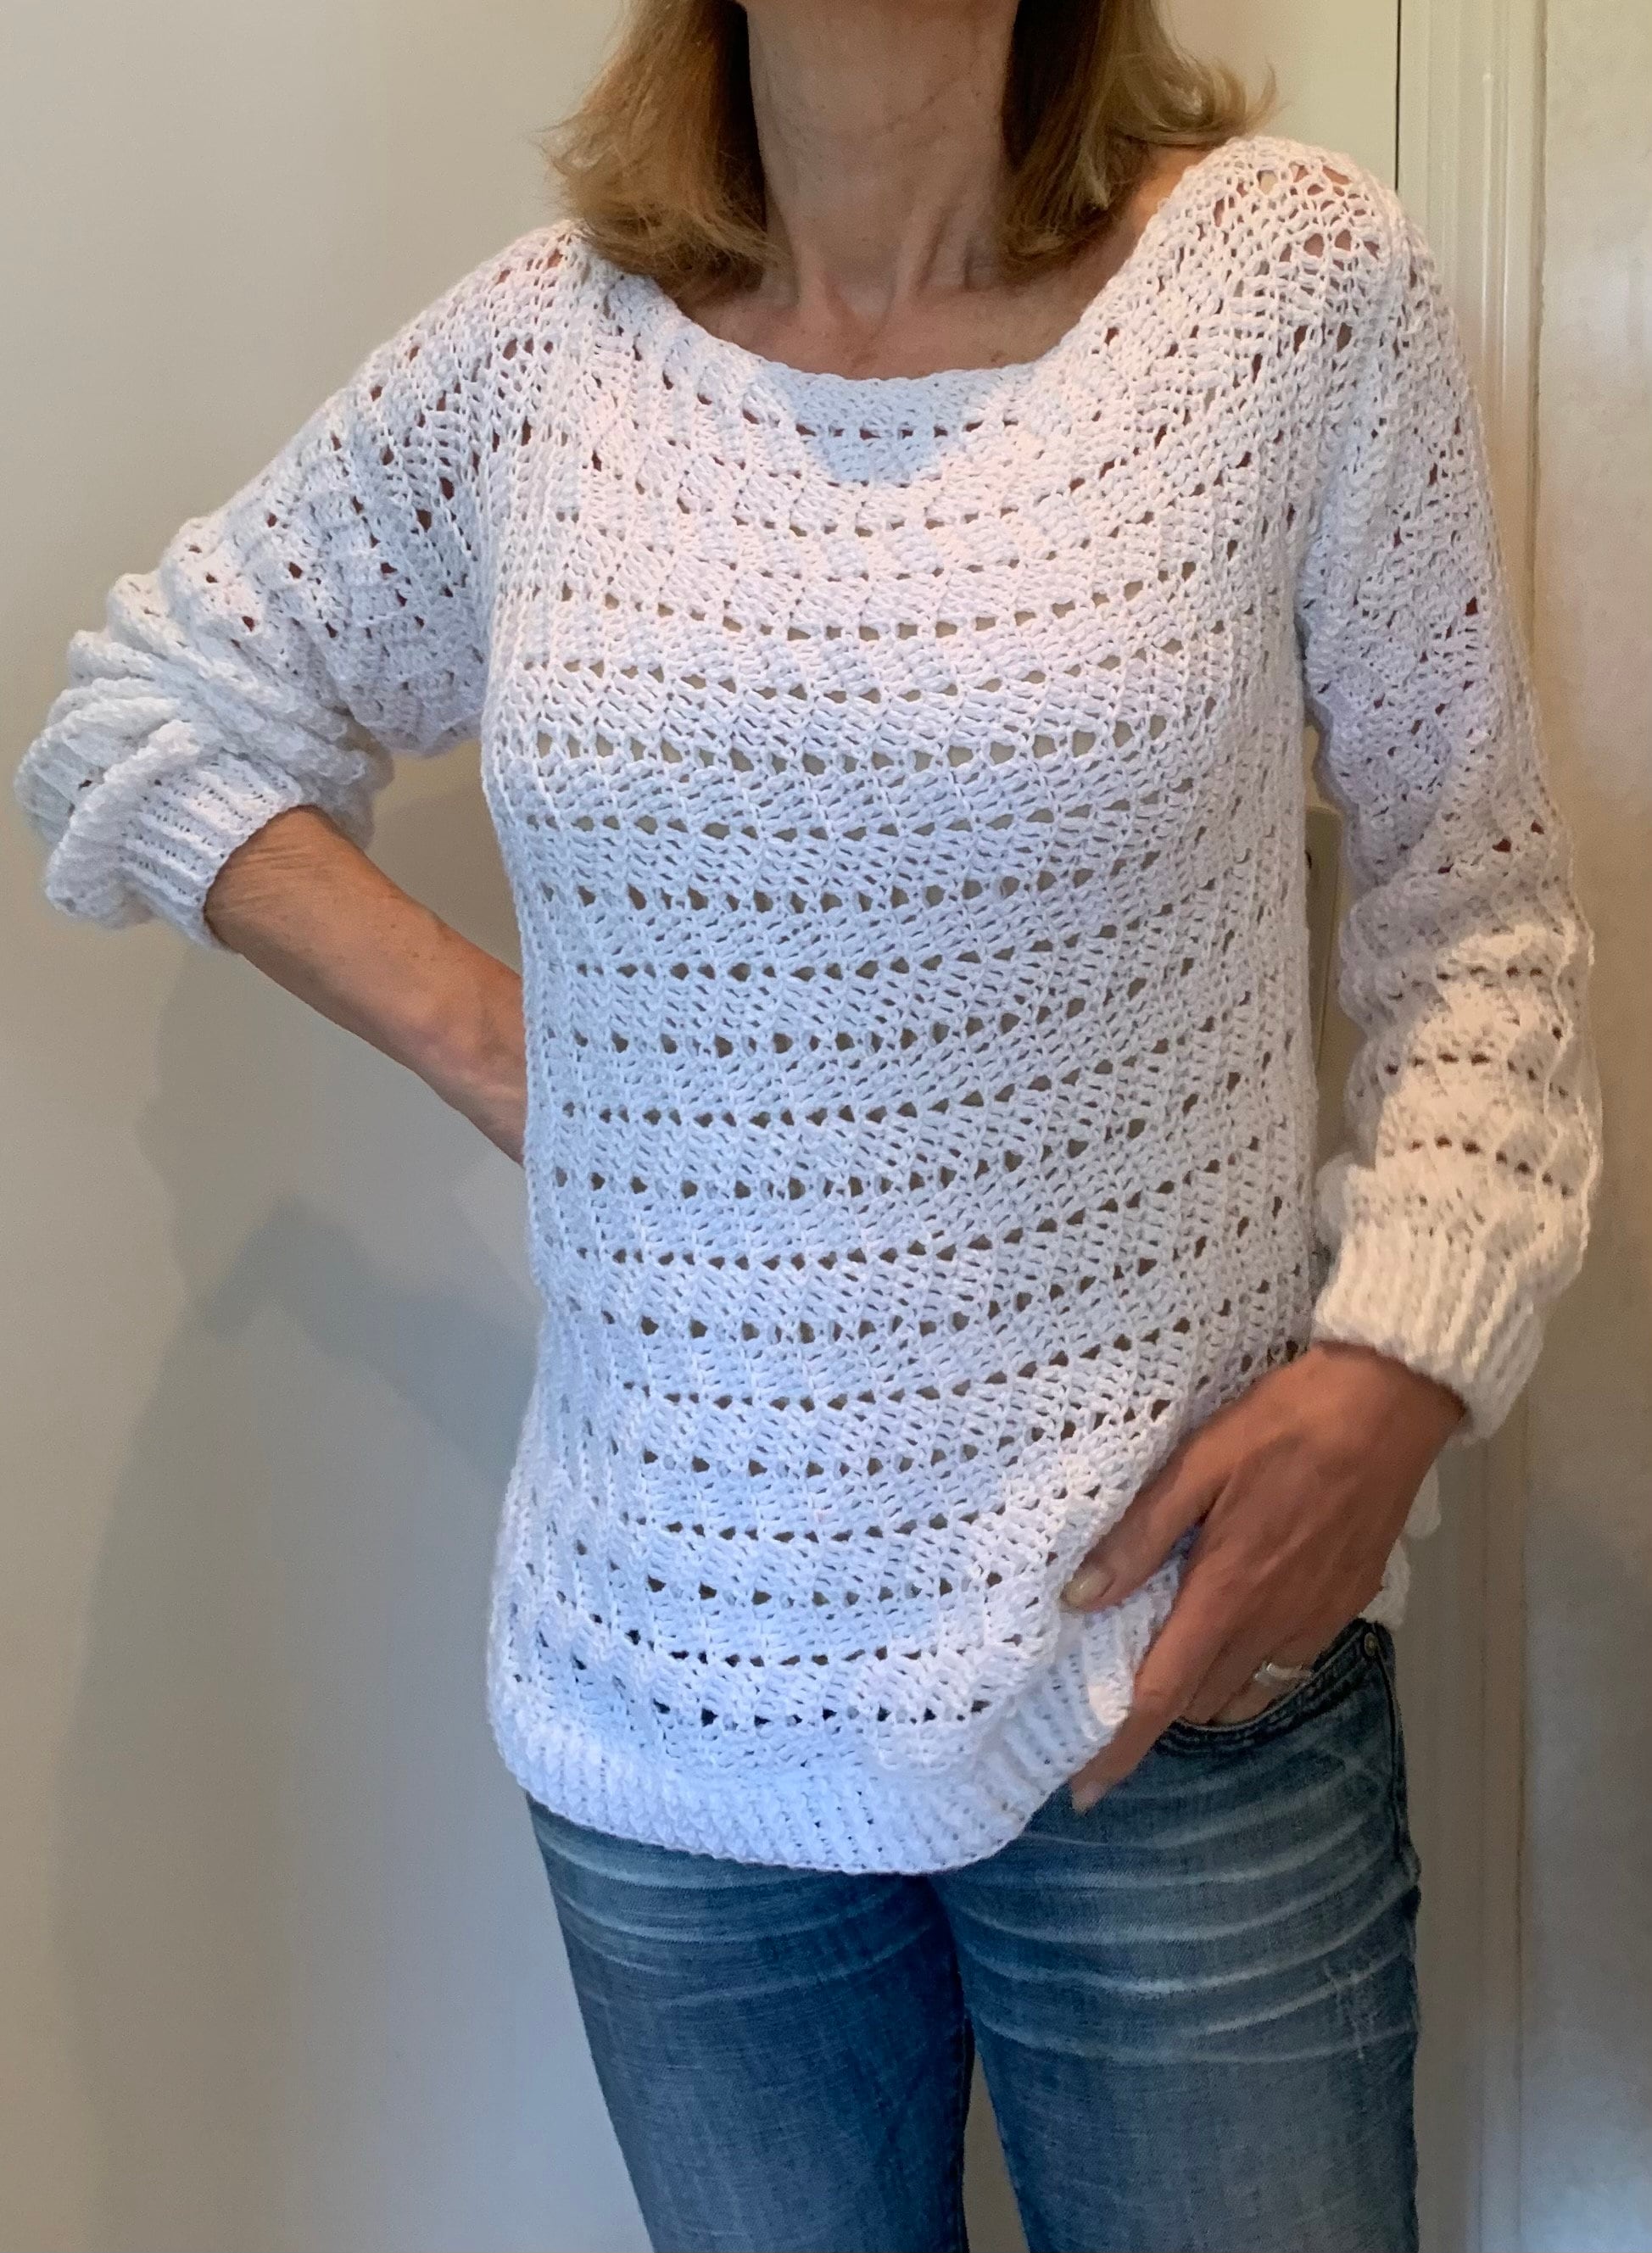 EZ Breezy White Sweater Crochet Pattern English USA & DUTCH